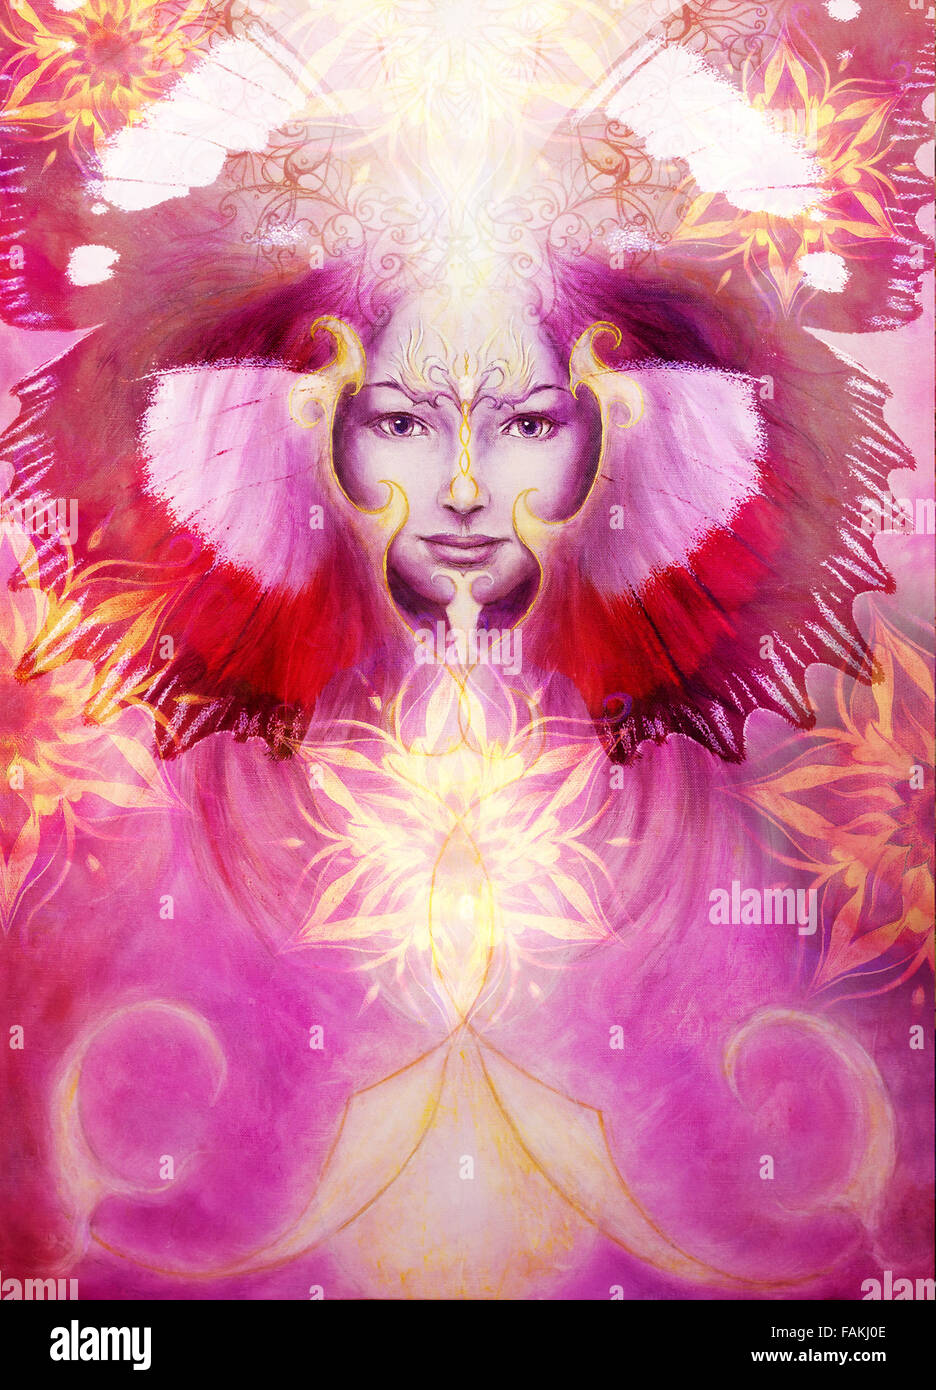 Belle peinture d'un esprit angélique violett avec une femme et des ornements d'or, dans les nuages de l'énergie et de la lumière pourpre Banque D'Images